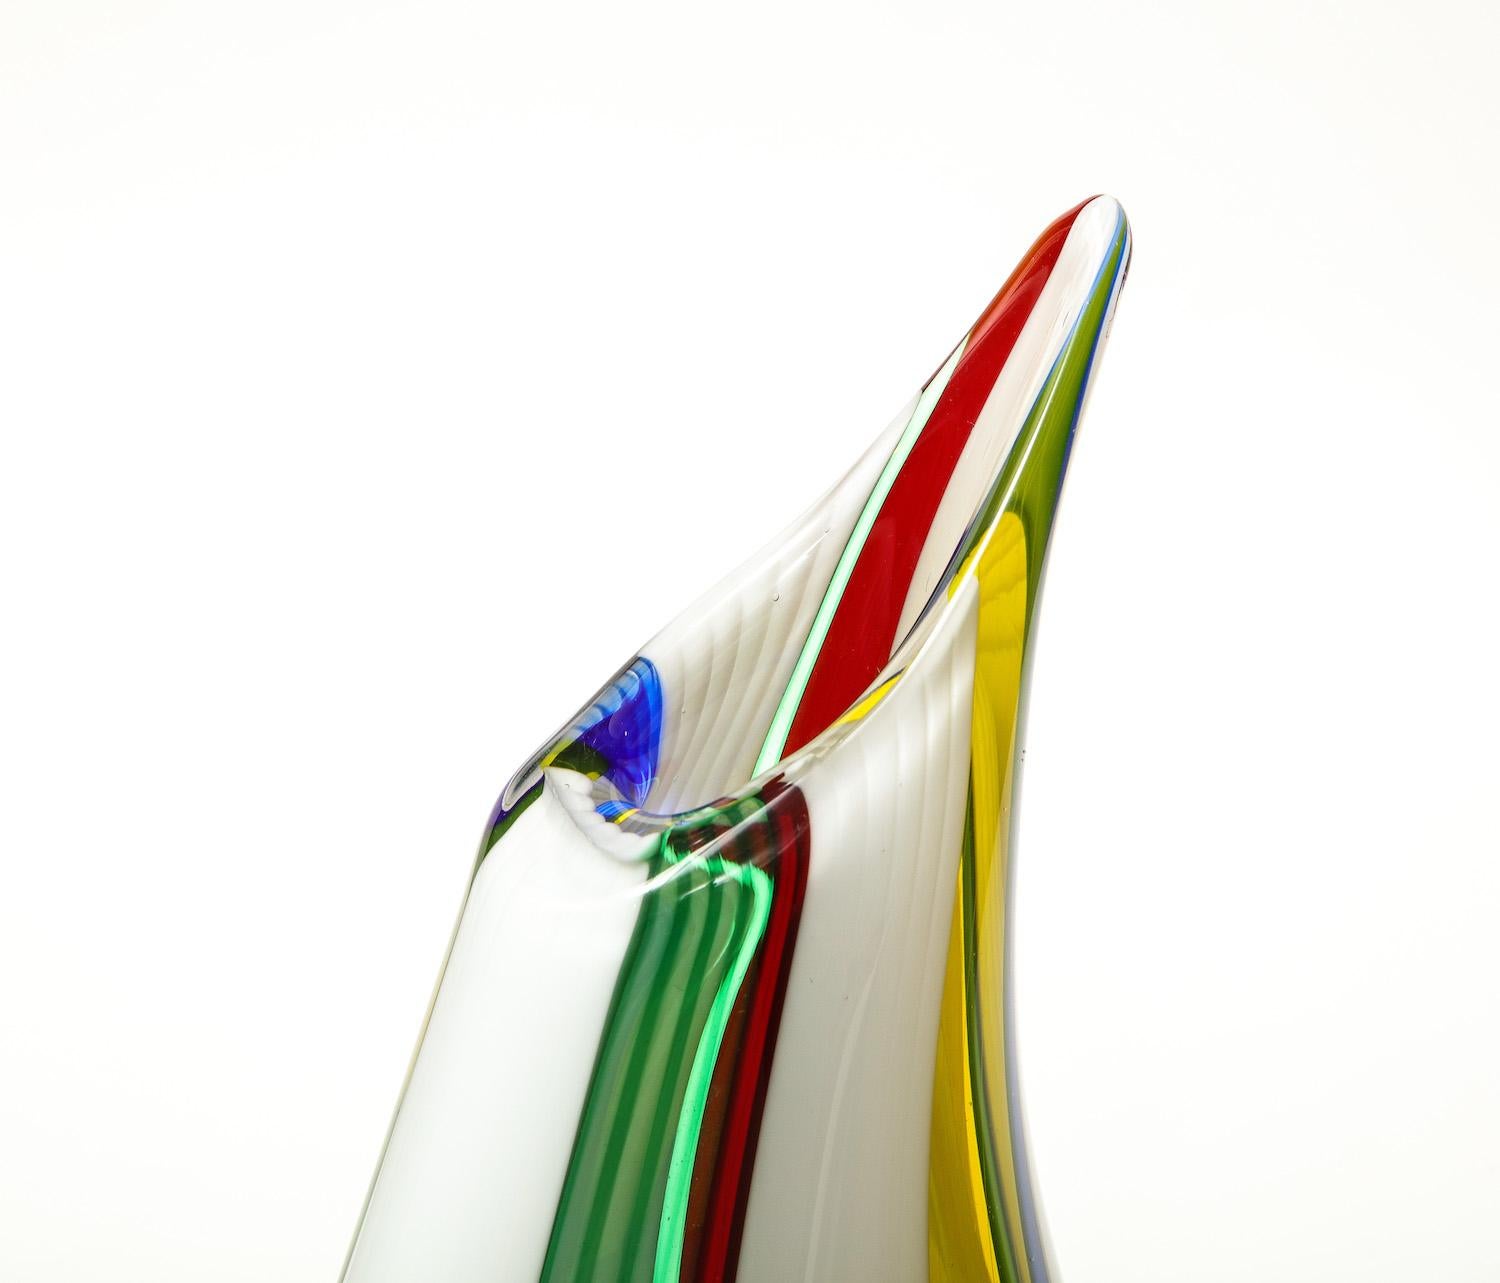 Handgeblasenes weißes Murano-Glas, verziert mit Stäben aus farbigem Glas und Schwaden aus undurchsichtigem weißen Glas. Abstrakte Krugform. Veröffentlicht: AVEM Arte Vetraria Muranese, Künstlerische Produktion, 1932-1972. S. 85 für ein ähnliches